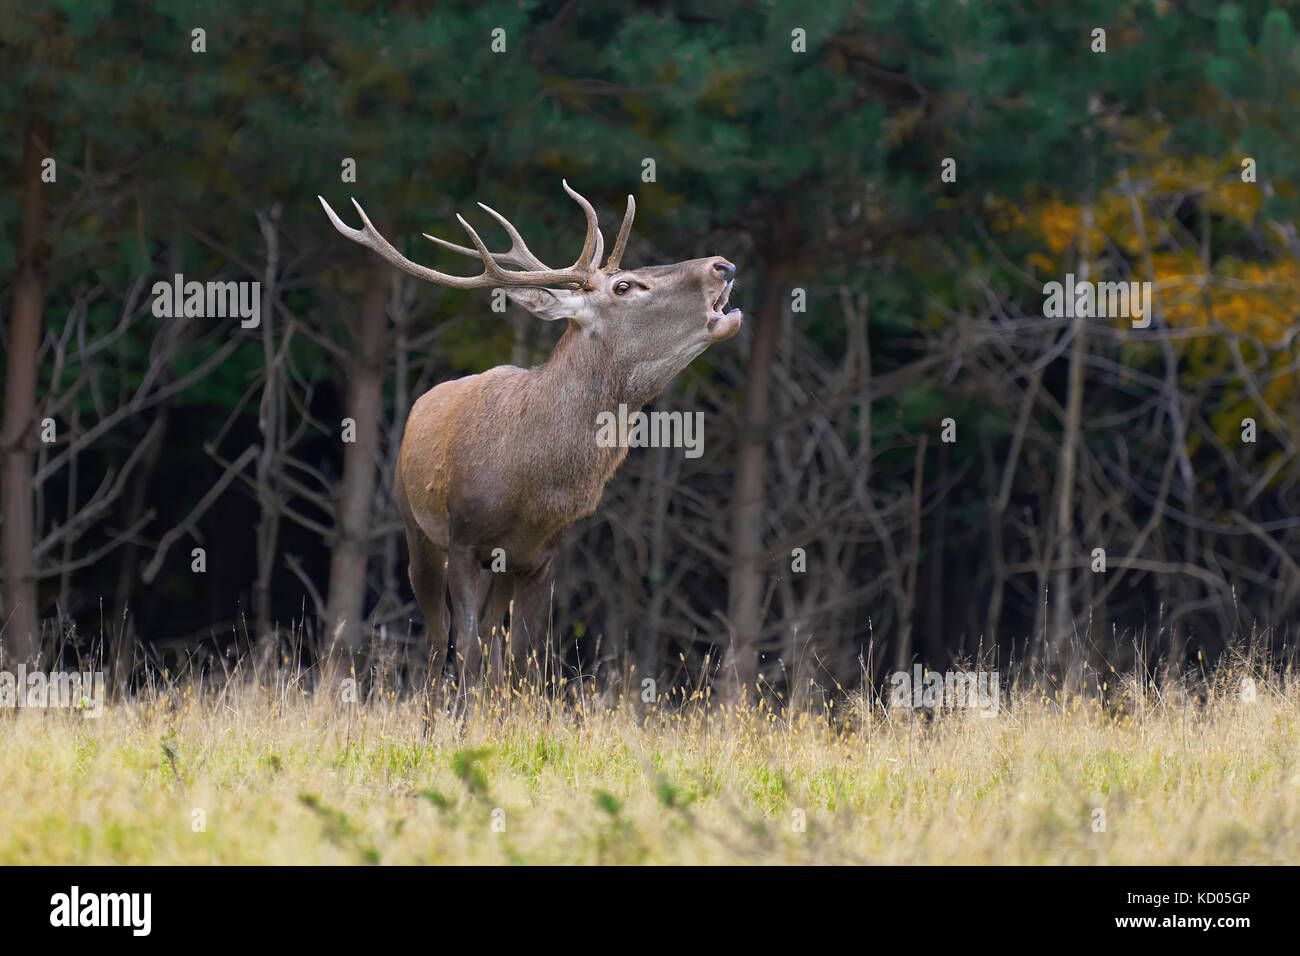 Portrait de majestic red deer stag adultes puissants dans l'environnement naturel Banque D'Images